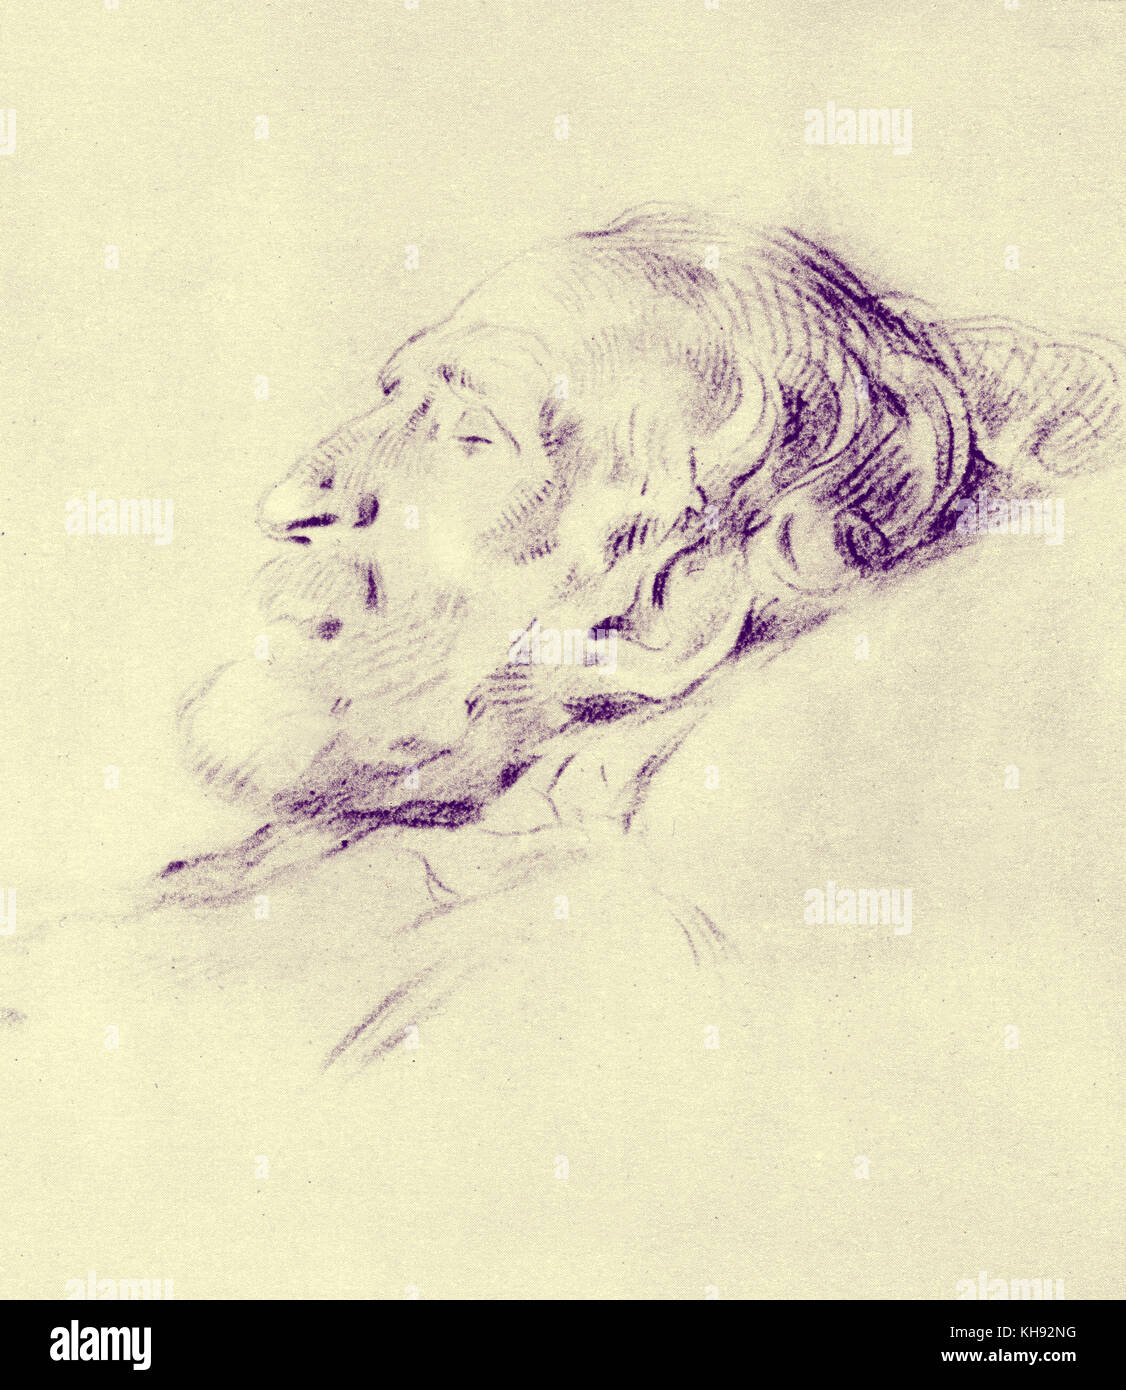 Giuseppe Verdi 's maschera di morte - illustrazione di L. Pogliaghi. Maschera costituita da gesso. Compositore italiano, 9 o 10 Ottobre 1813 - 27 gennaio 1901. Foto Stock